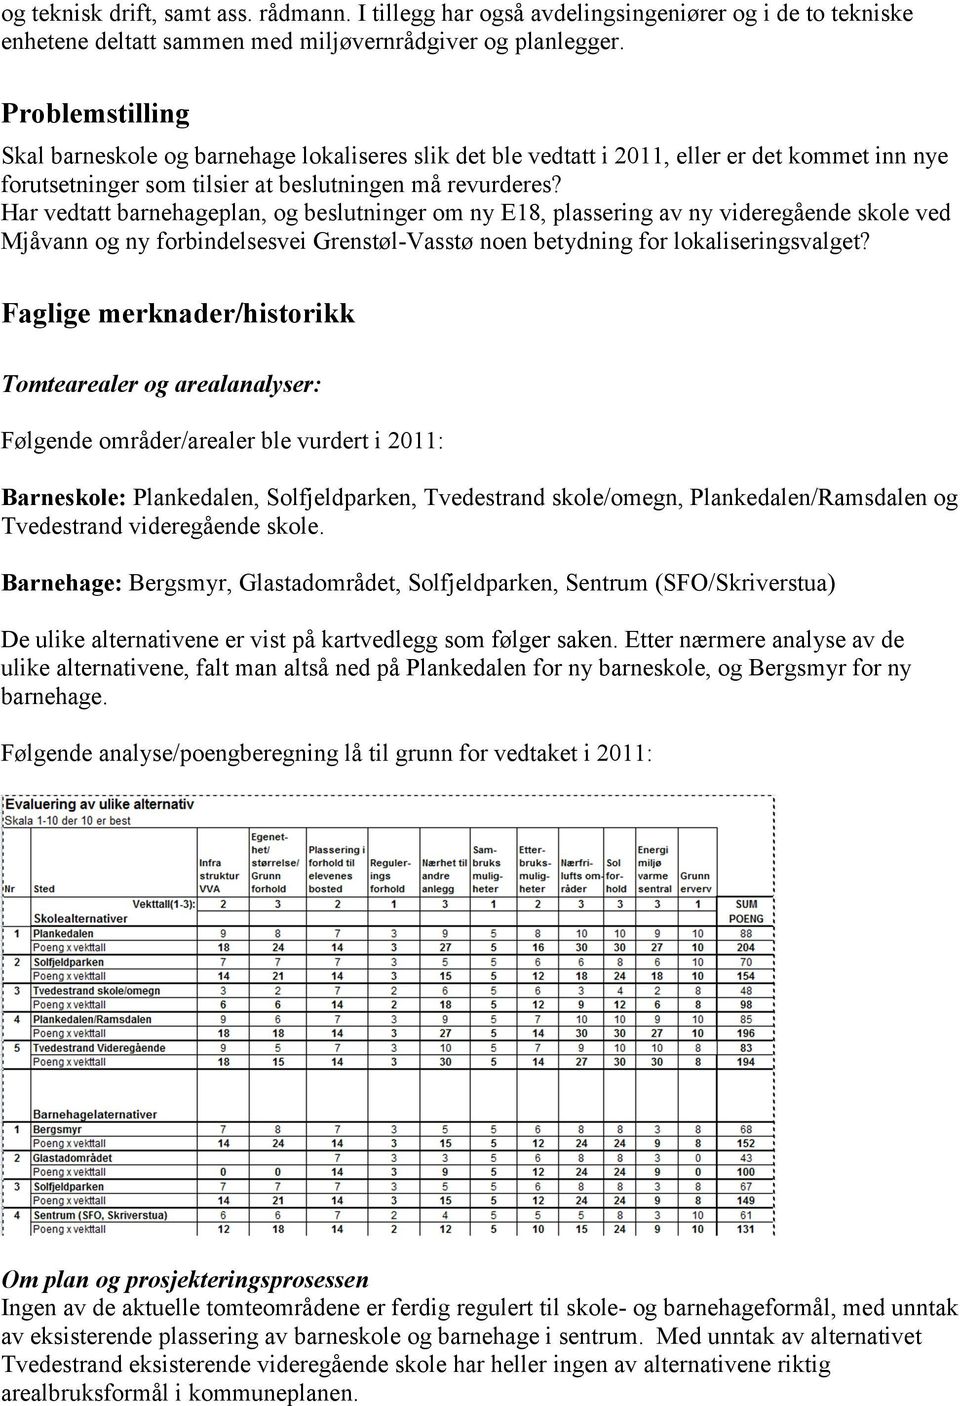 Har vedtatt barnehageplan, og beslutninger om ny E18, plassering av ny videregående skole ved Mjåvann og ny forbindelsesvei Grenstøl-Vasstø noen betydning for lokaliseringsvalget?